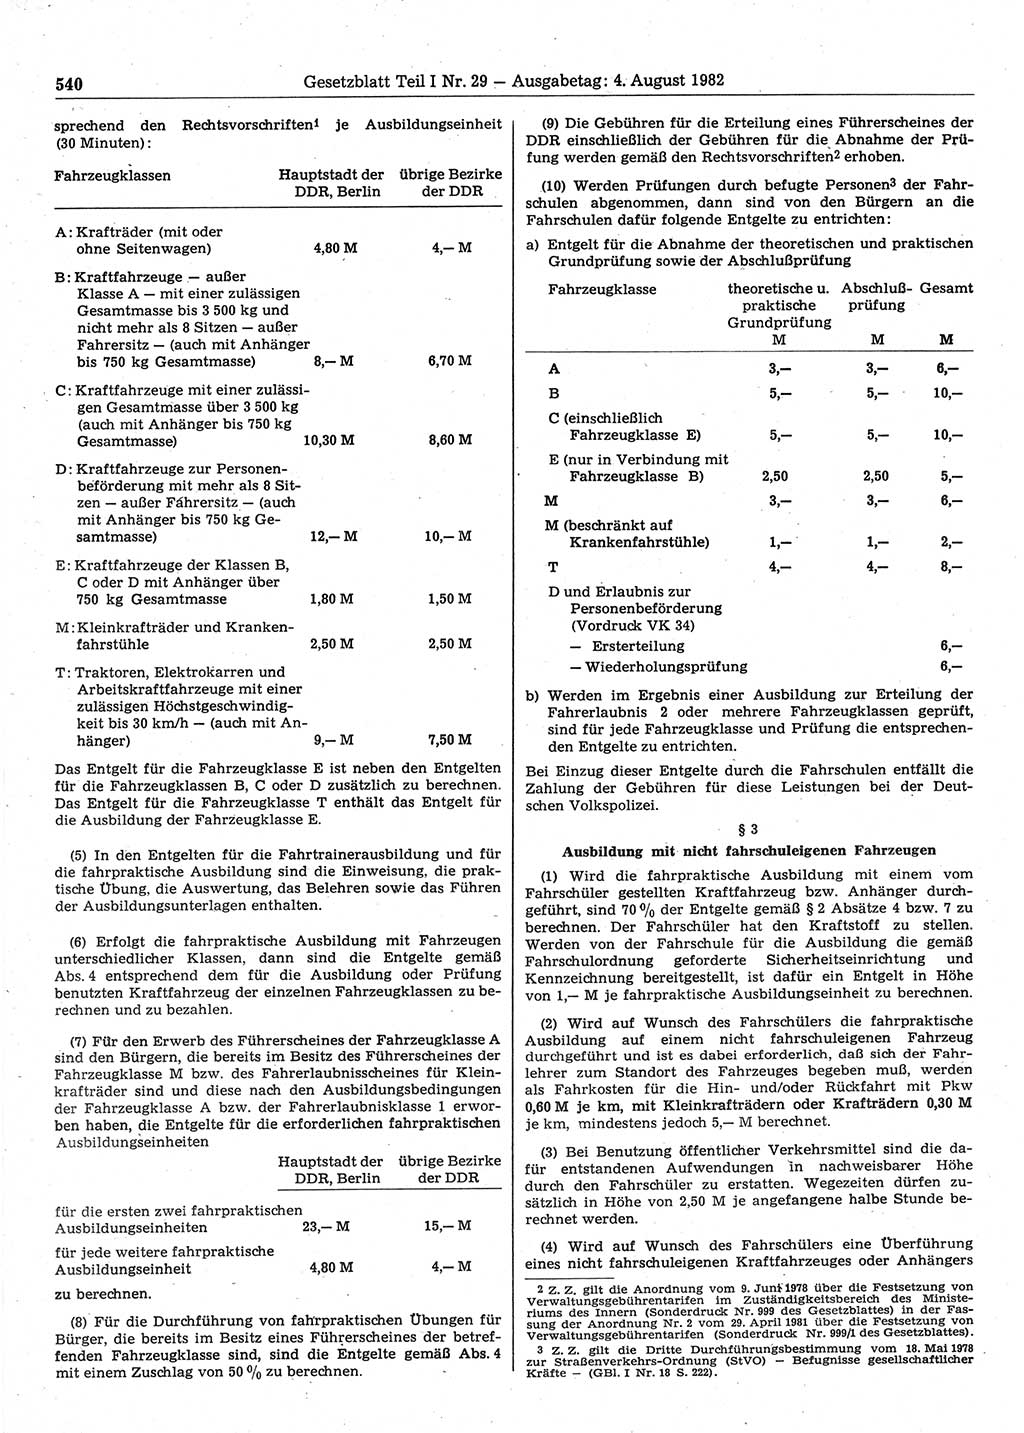 Gesetzblatt (GBl.) der Deutschen Demokratischen Republik (DDR) Teil Ⅰ 1982, Seite 540 (GBl. DDR Ⅰ 1982, S. 540)